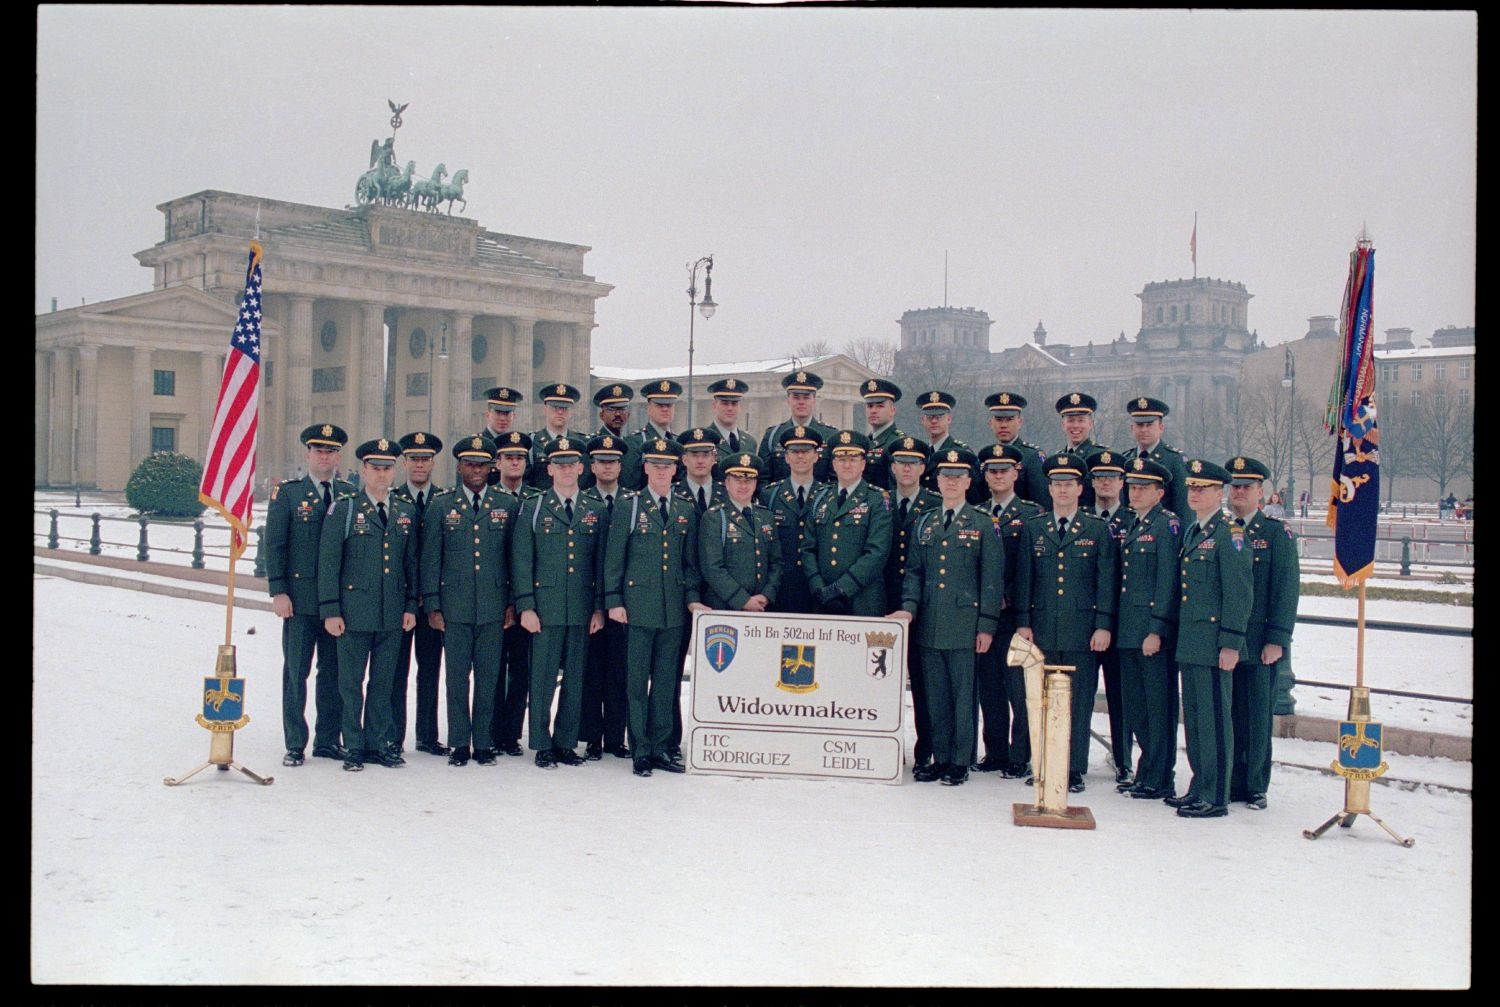 Fotografie: Offiziere des 5th Battalion, 502nd Infantry Regiment der U.S. Army Berlin vor dem Brandenburger Tor in Berlin-Mitte